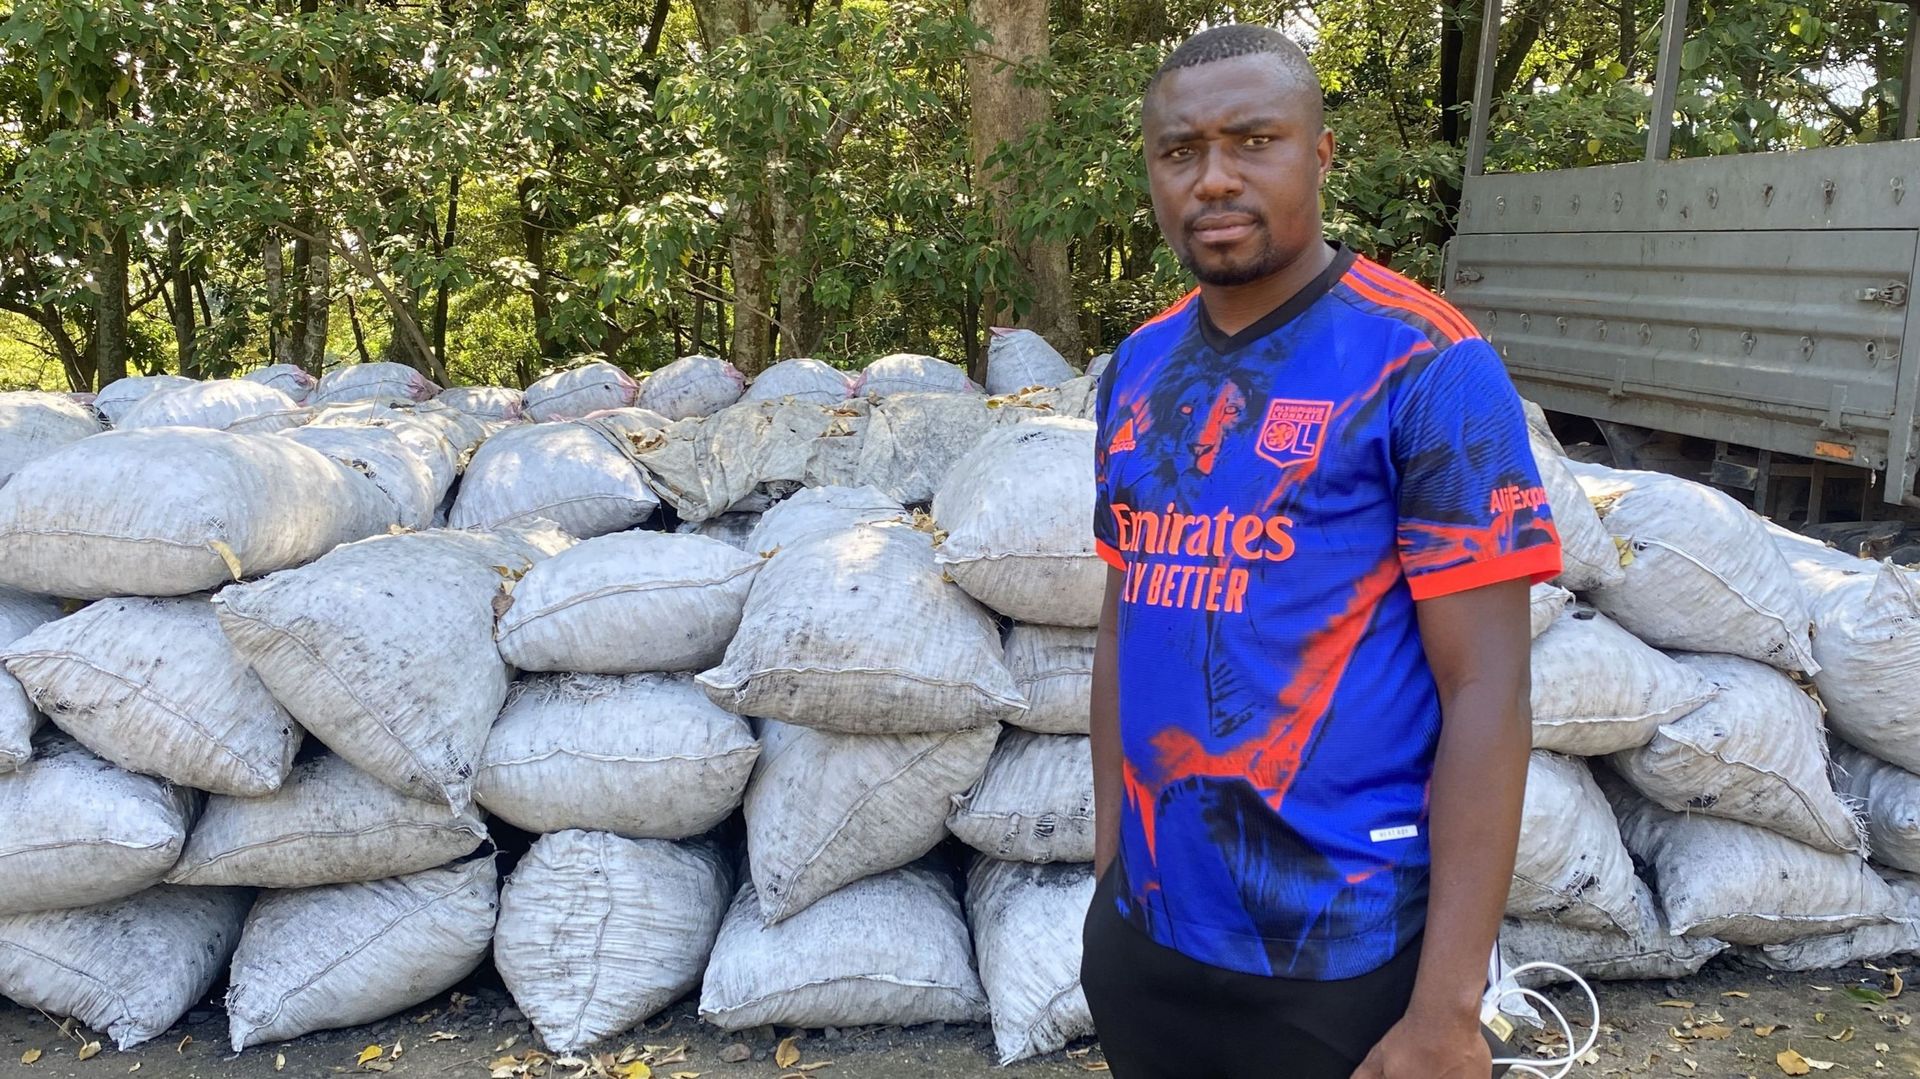 "Là, il y a 270 sacs de makala", explique Emmanuel Baati Lukoo, responsable du secteur sud du Parc des Virunga, en désignant le grand tas de sacs de toile blanche.